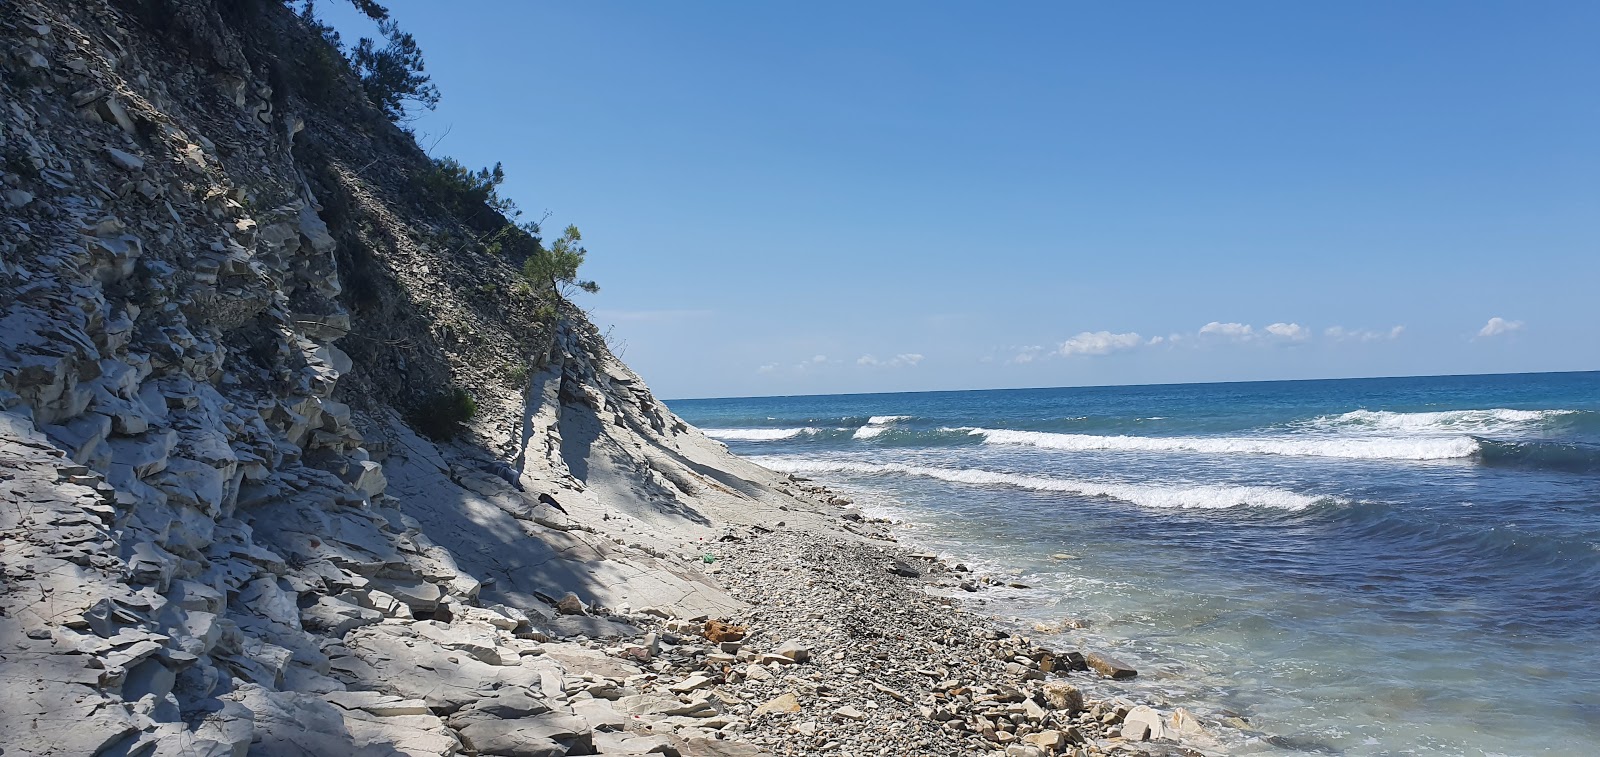 Plyazh Golubaya Bezdna'in fotoğrafı geniş plaj ile birlikte